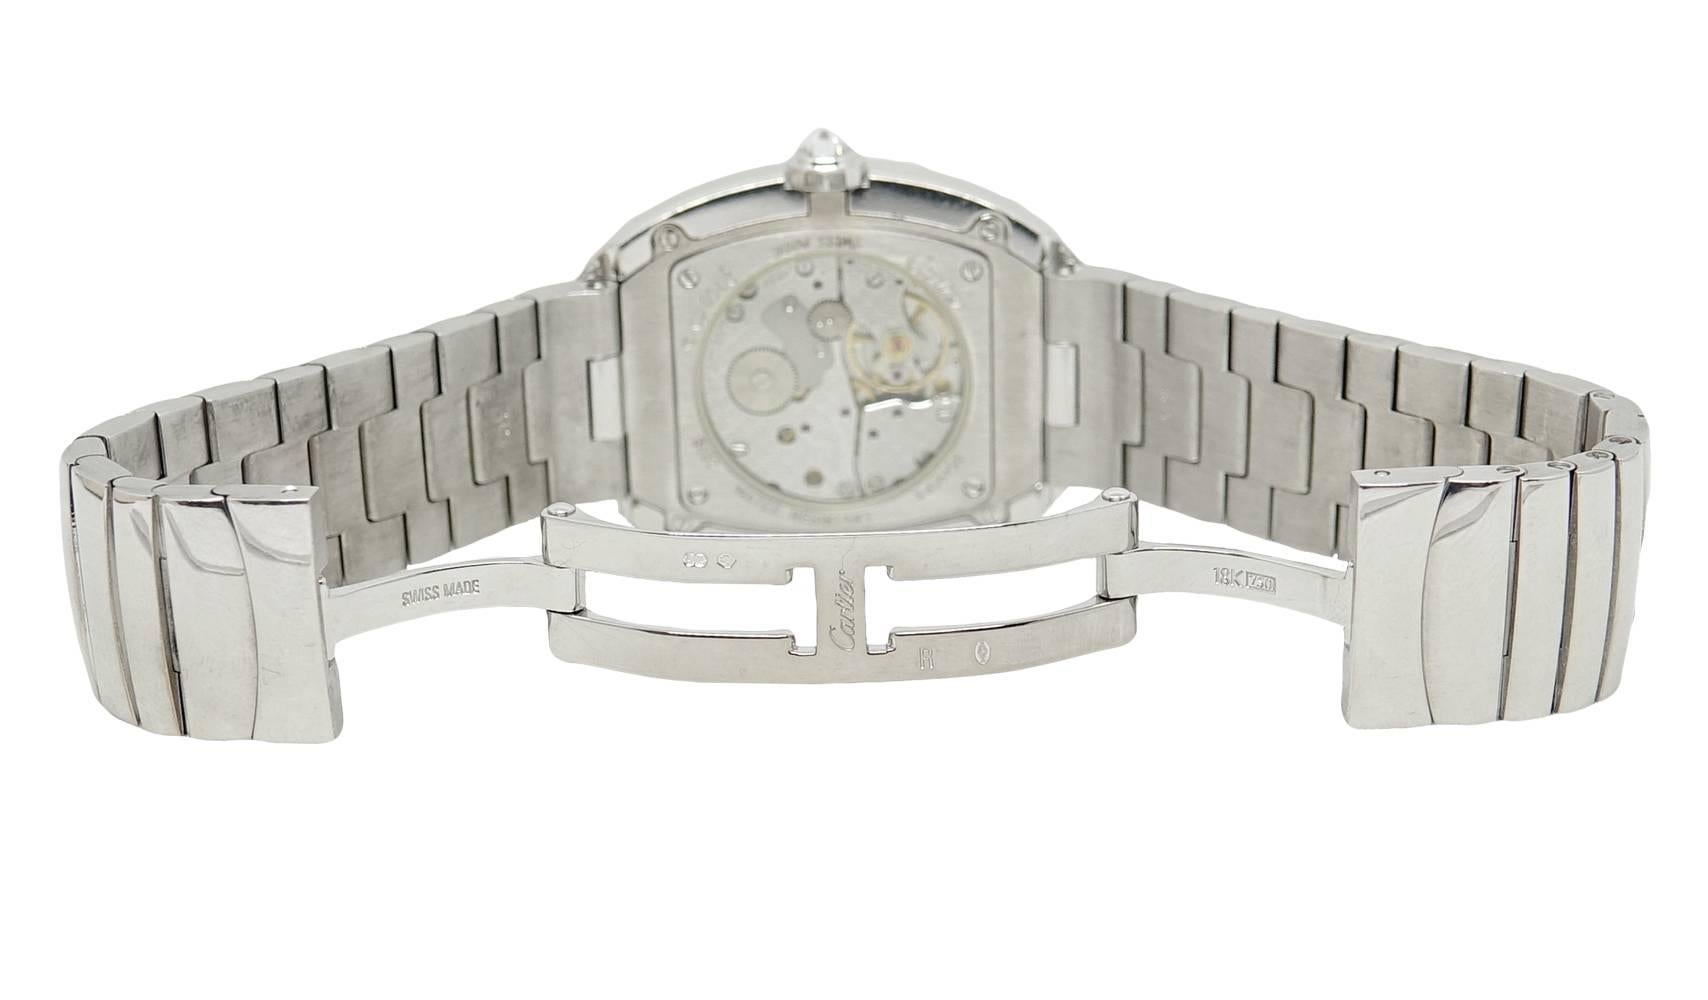 Cartier Baignoire Large Diamond Bezel White Gold Wristwatch WB520010 1